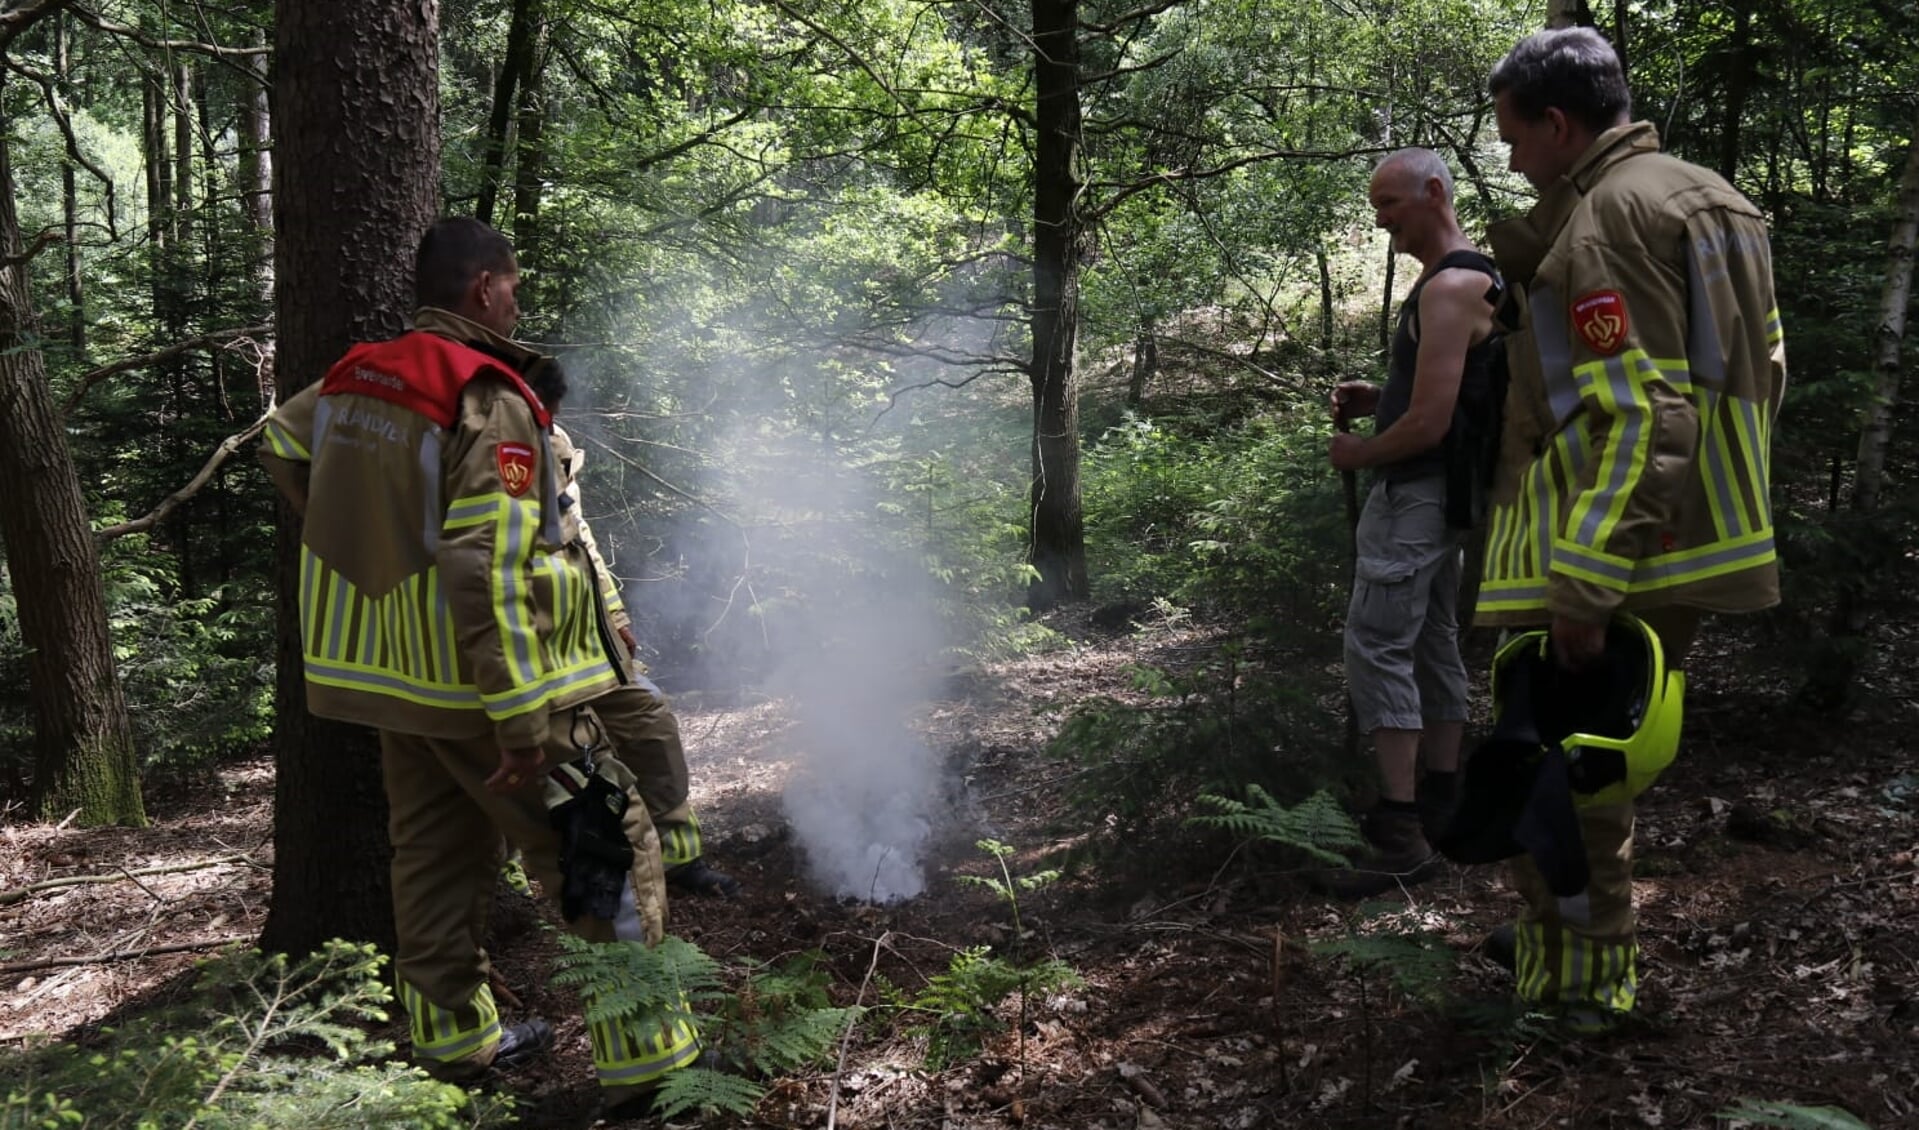 De brandweer moest vanmiddag uitrukken wegens een smeulende fosforgranaat in de bossen.